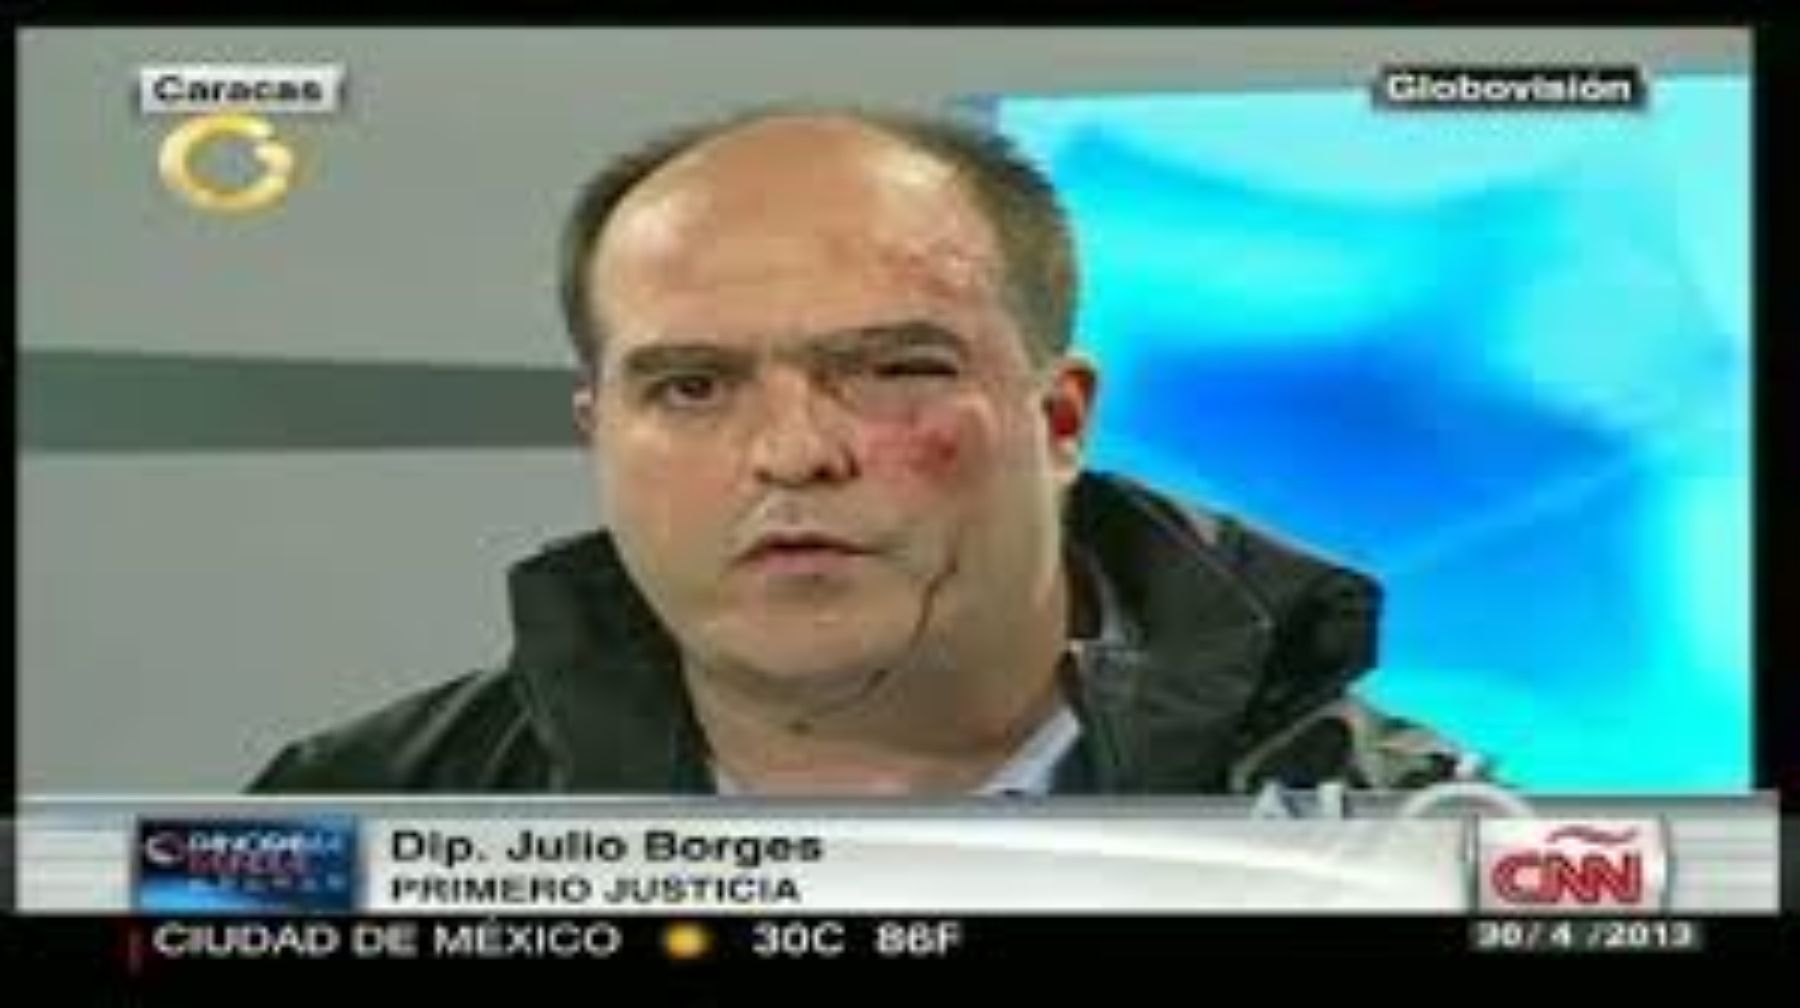 Cadenas internacionales como la CNN mostraron a los diputados venezolanos que fueron agredidos.